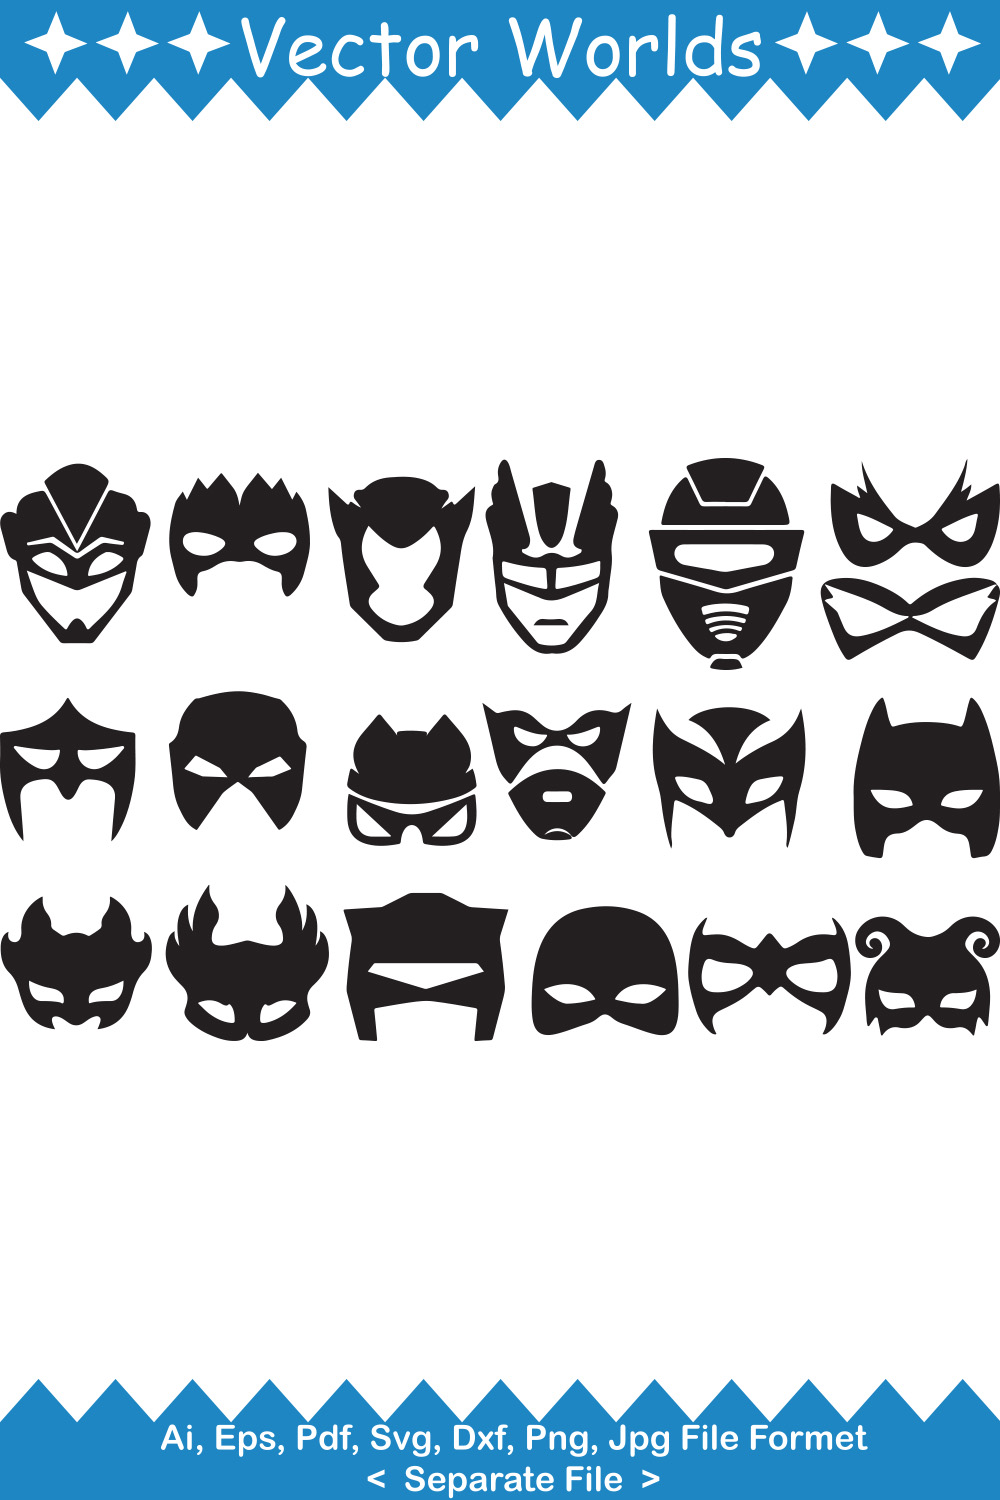 Super Hero's Mask SVG Vector Design pinterest preview image.